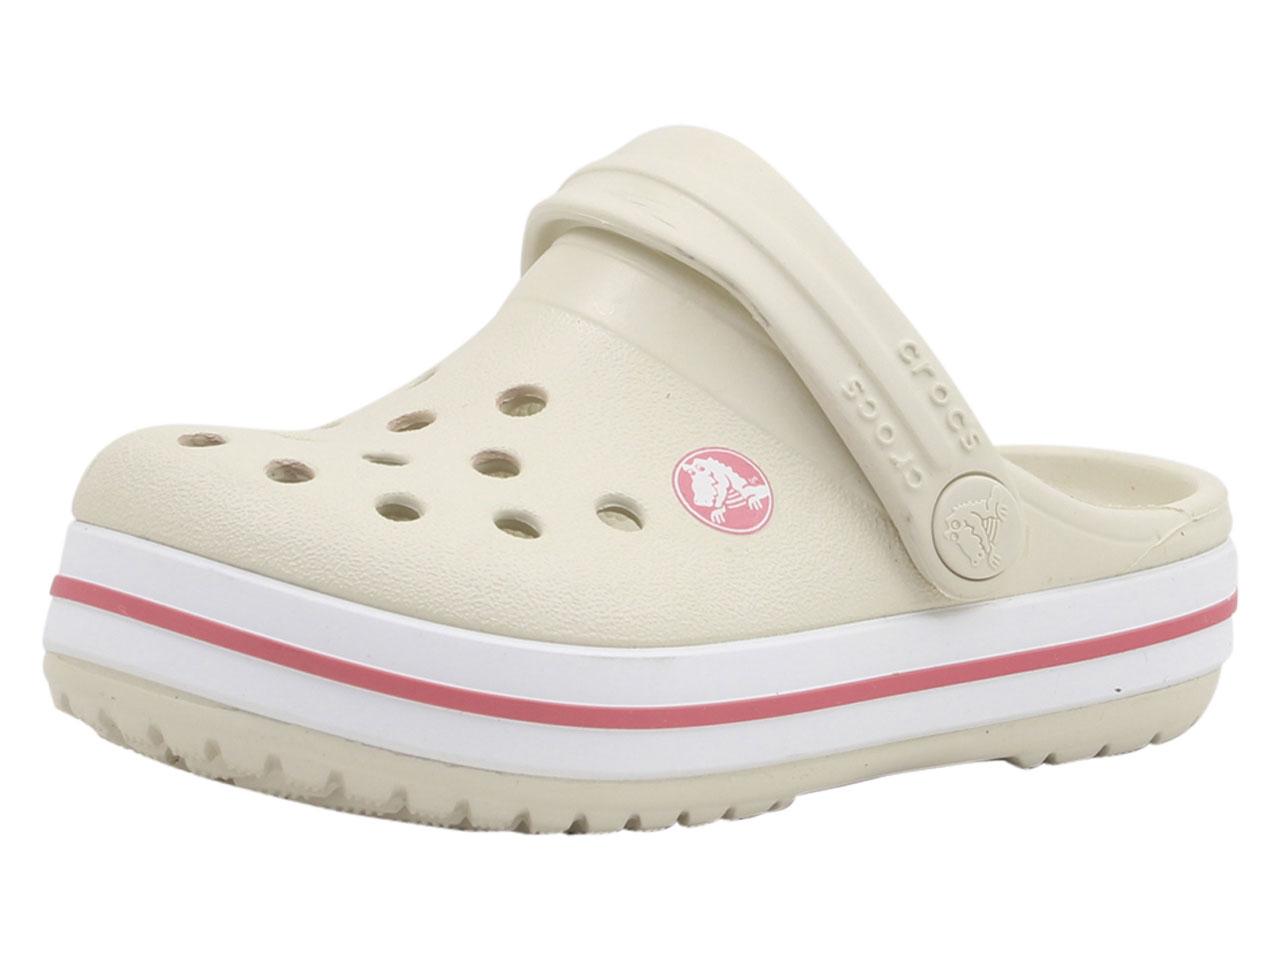 Crocs Toddler/Little Kid's Crocband Clogs Sandals Shoes - Stucco/Melon - 11 M US Little Kid